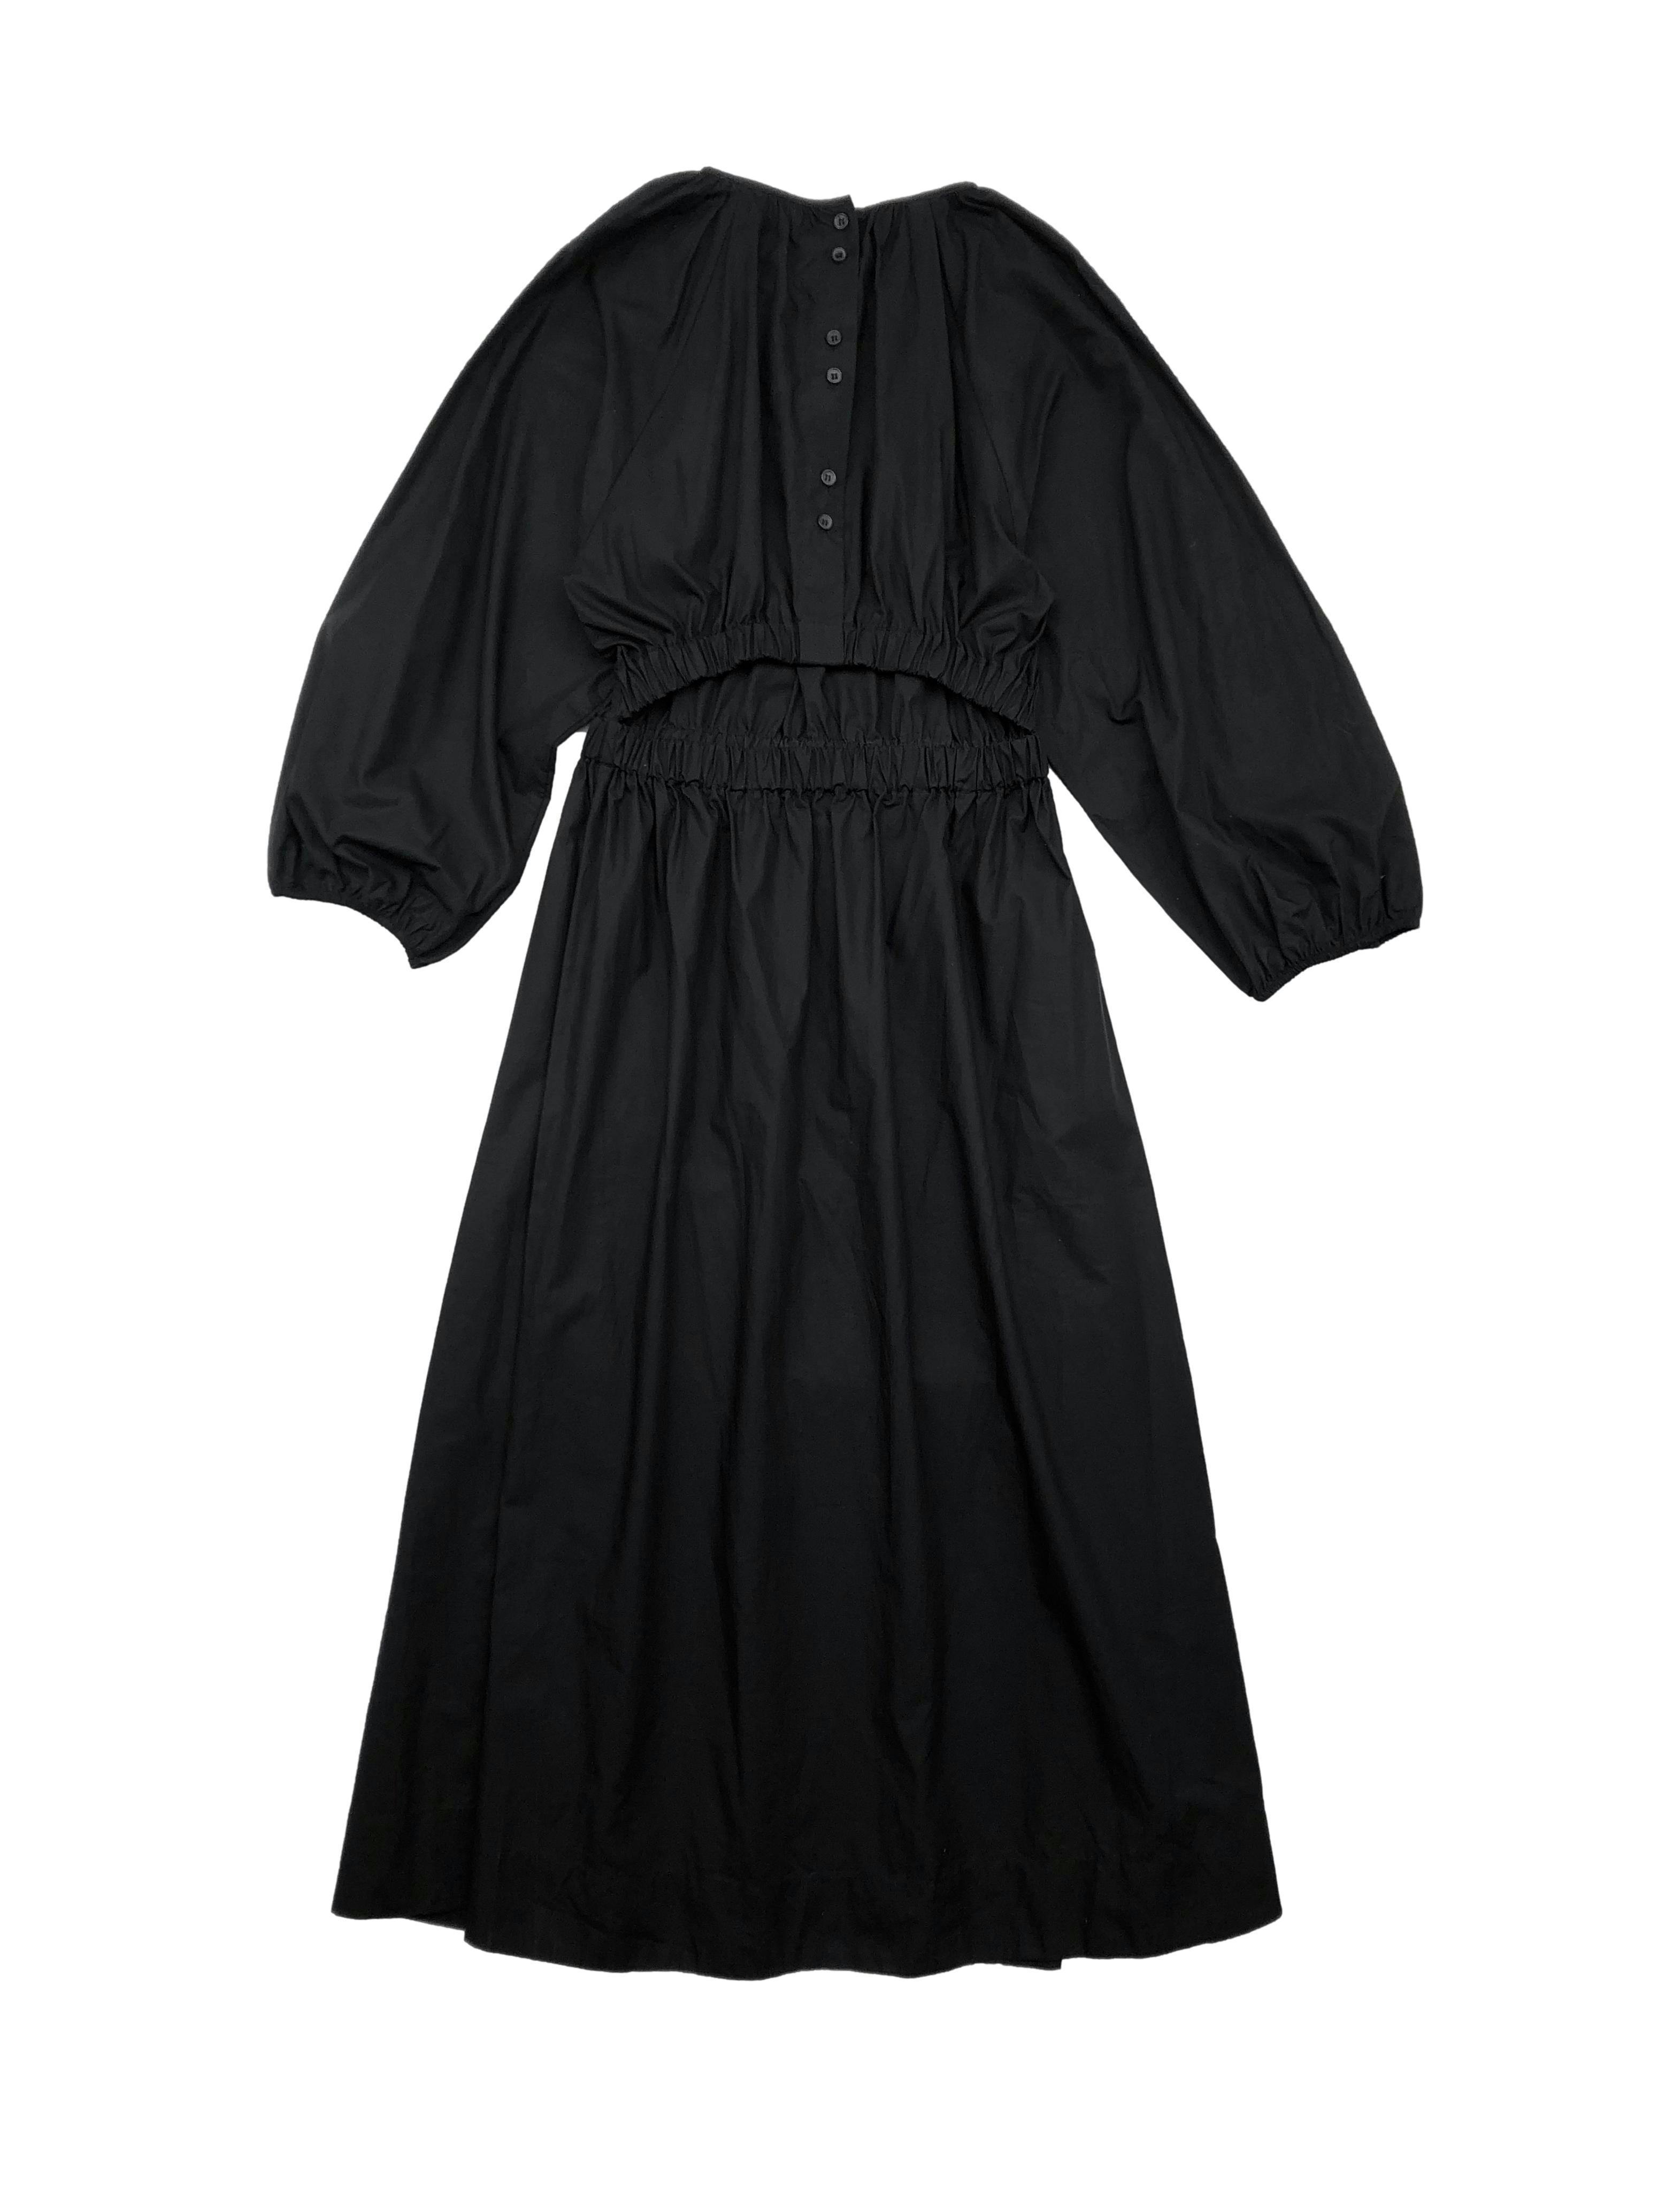 Maxi vestido Zara negro, tela fresca 100% algodón con bolsillos, elástico en cintura y puños, abertura en espalda baja con botones. Busto 90cm sin estirar, Largo 130cm.